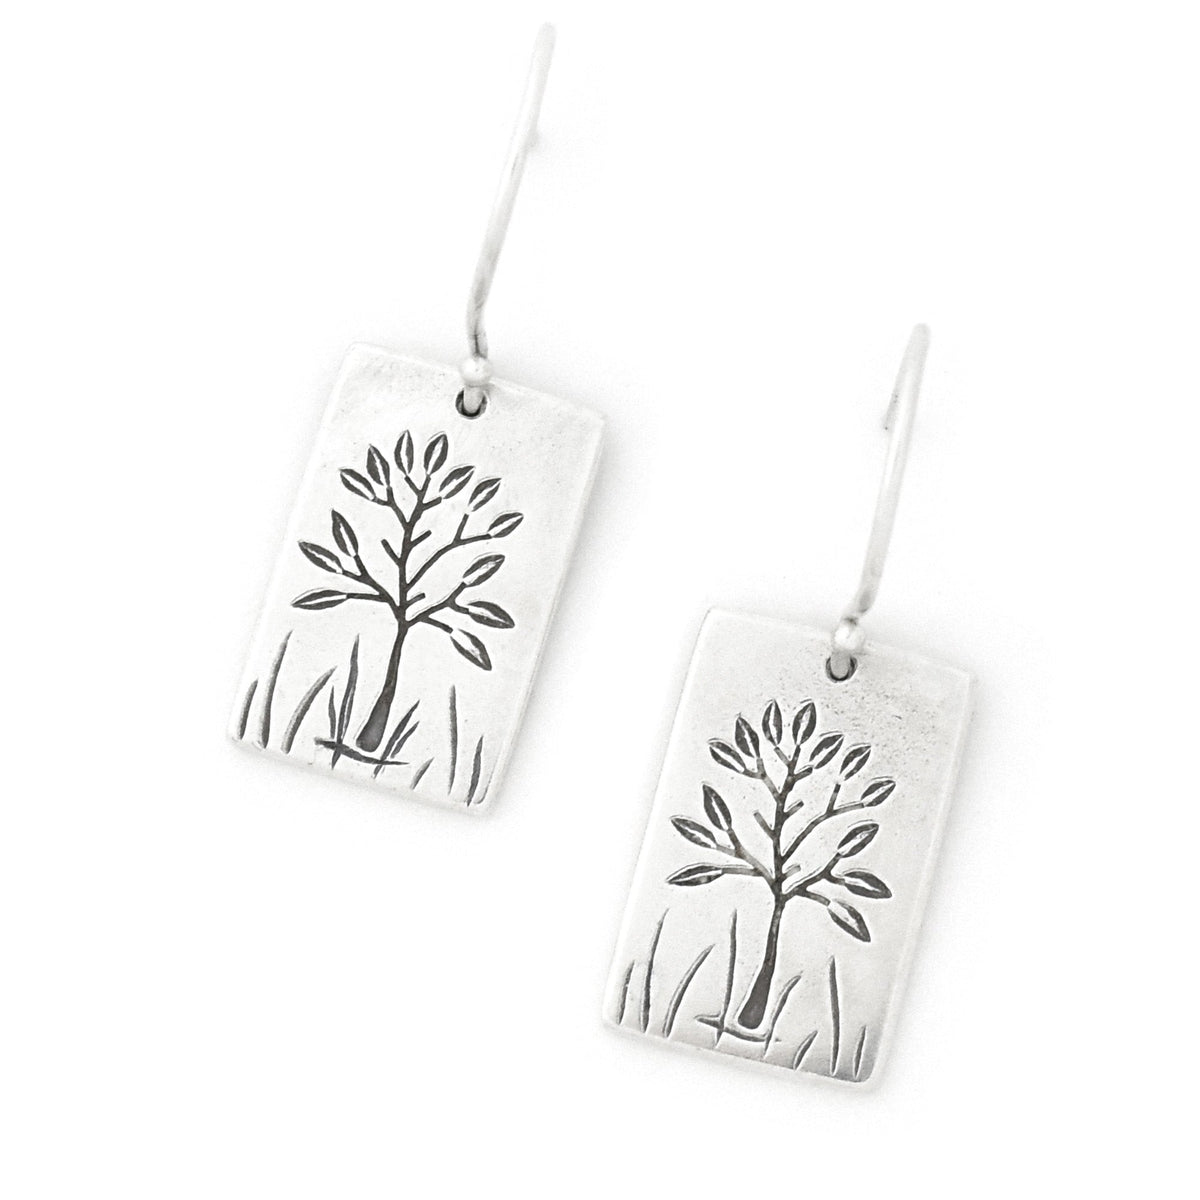 Reversible Solstice Tree Earrings - Silver Earrings   7107 - handmade by Beth Millner Jewelry